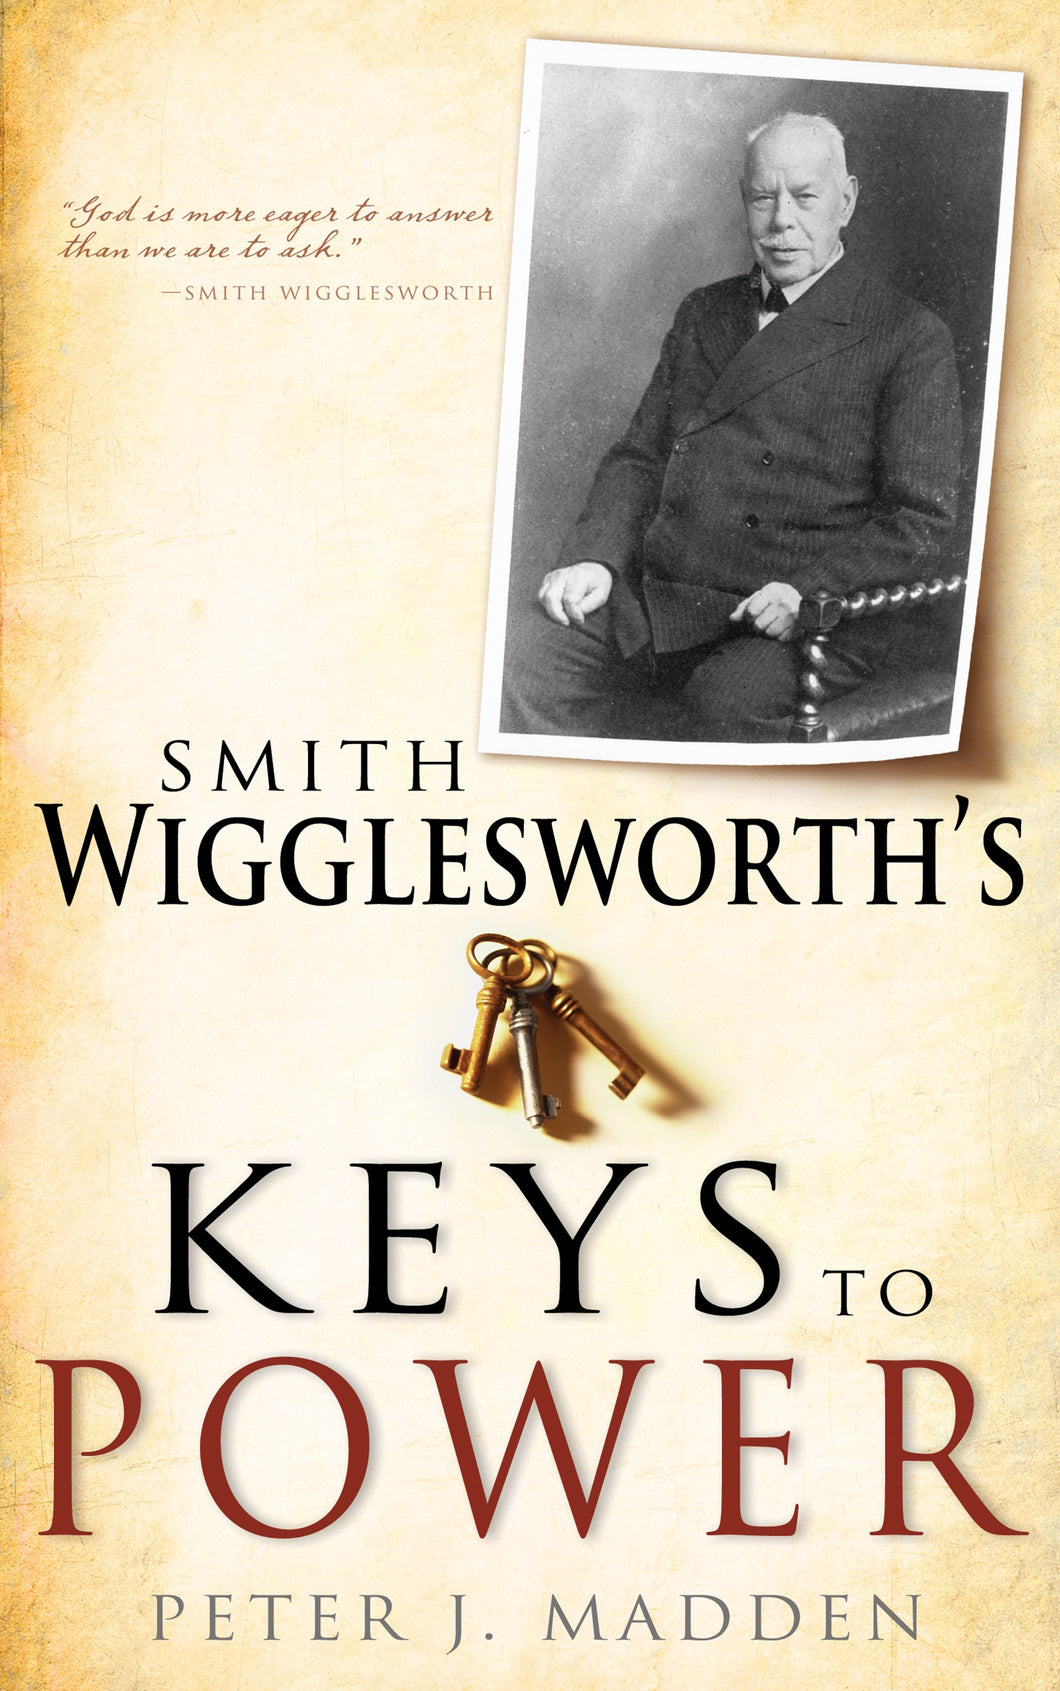 Smith Wigglesworths Keys To Power